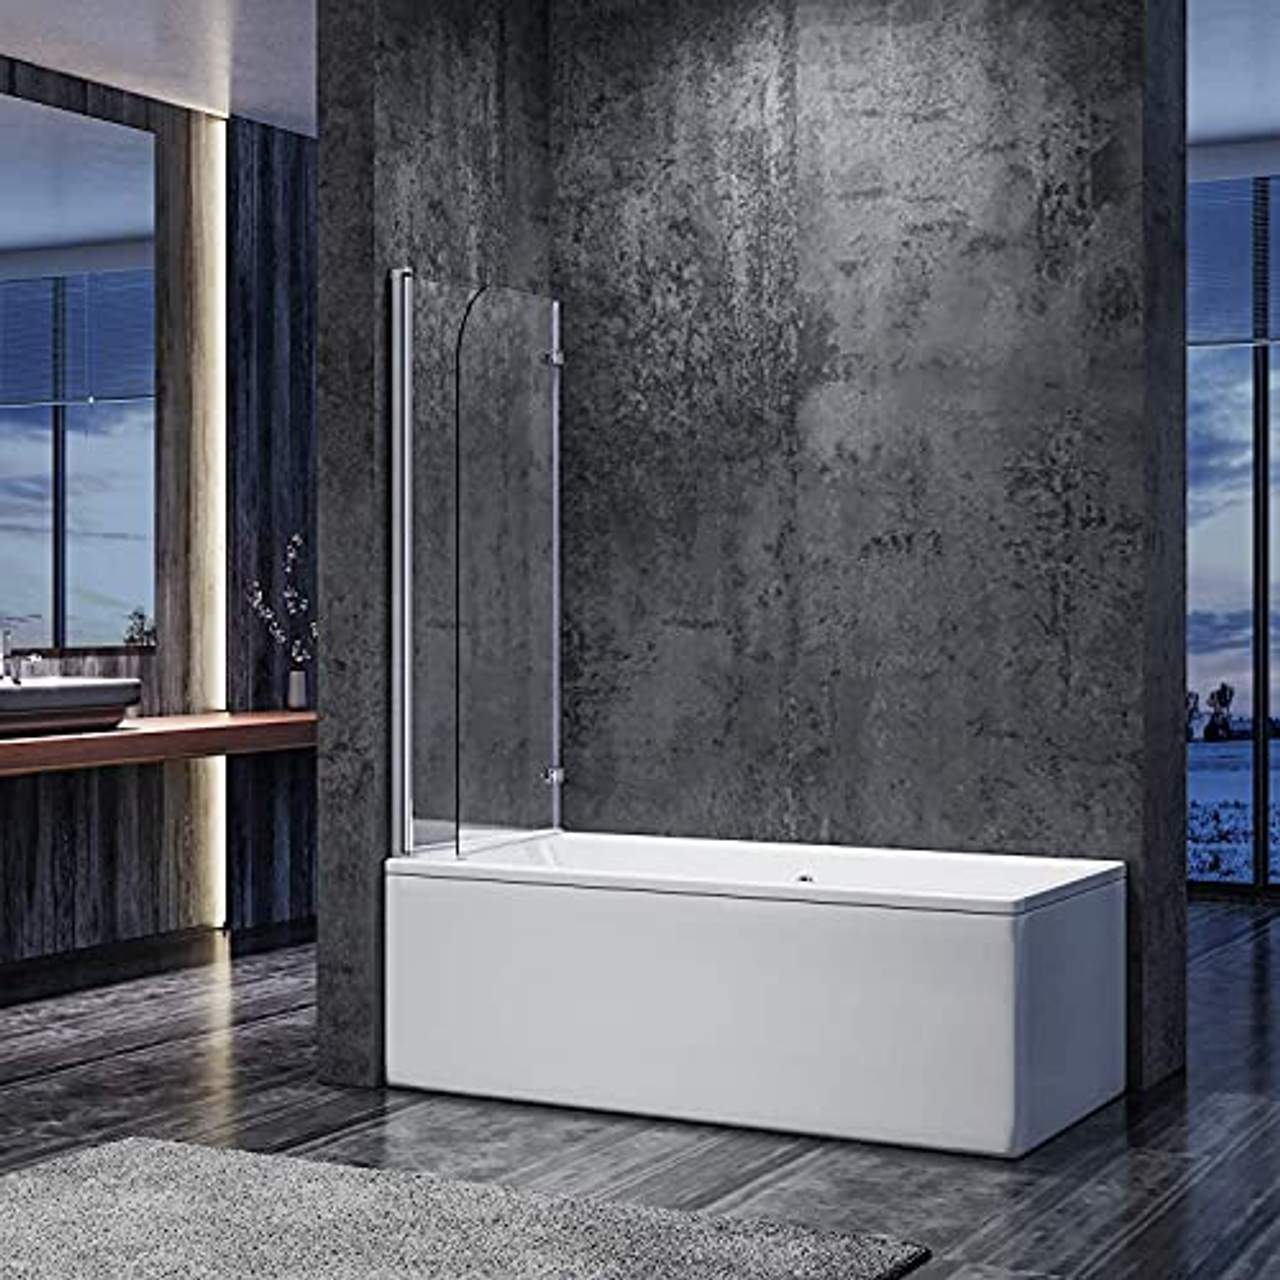 SONNI Duschwand für Badewanne 120x140 cm